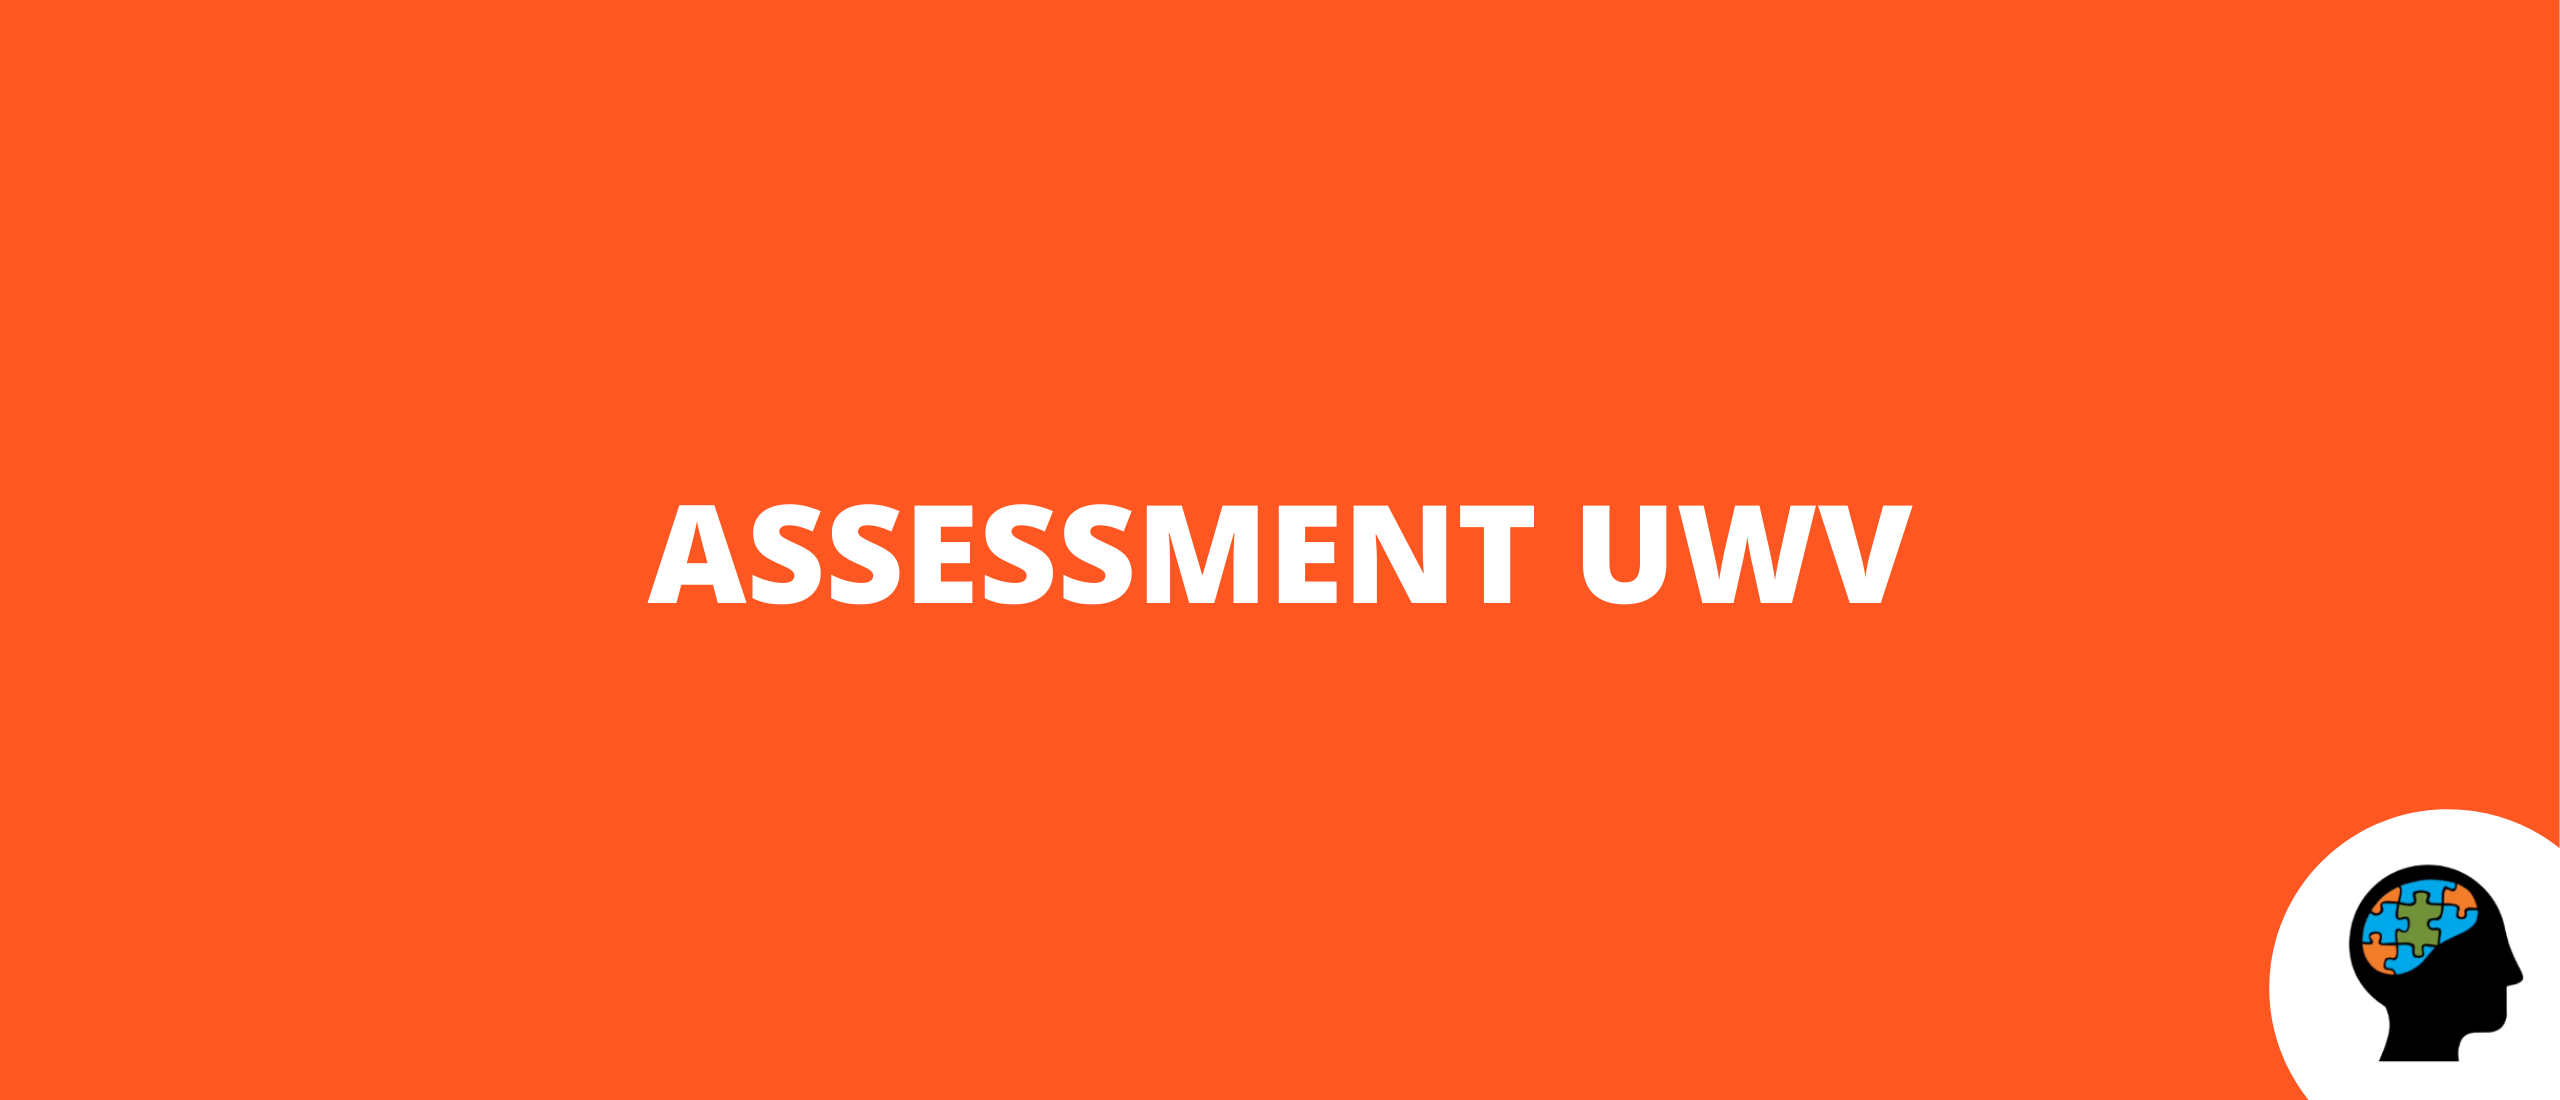 Assessment UWV